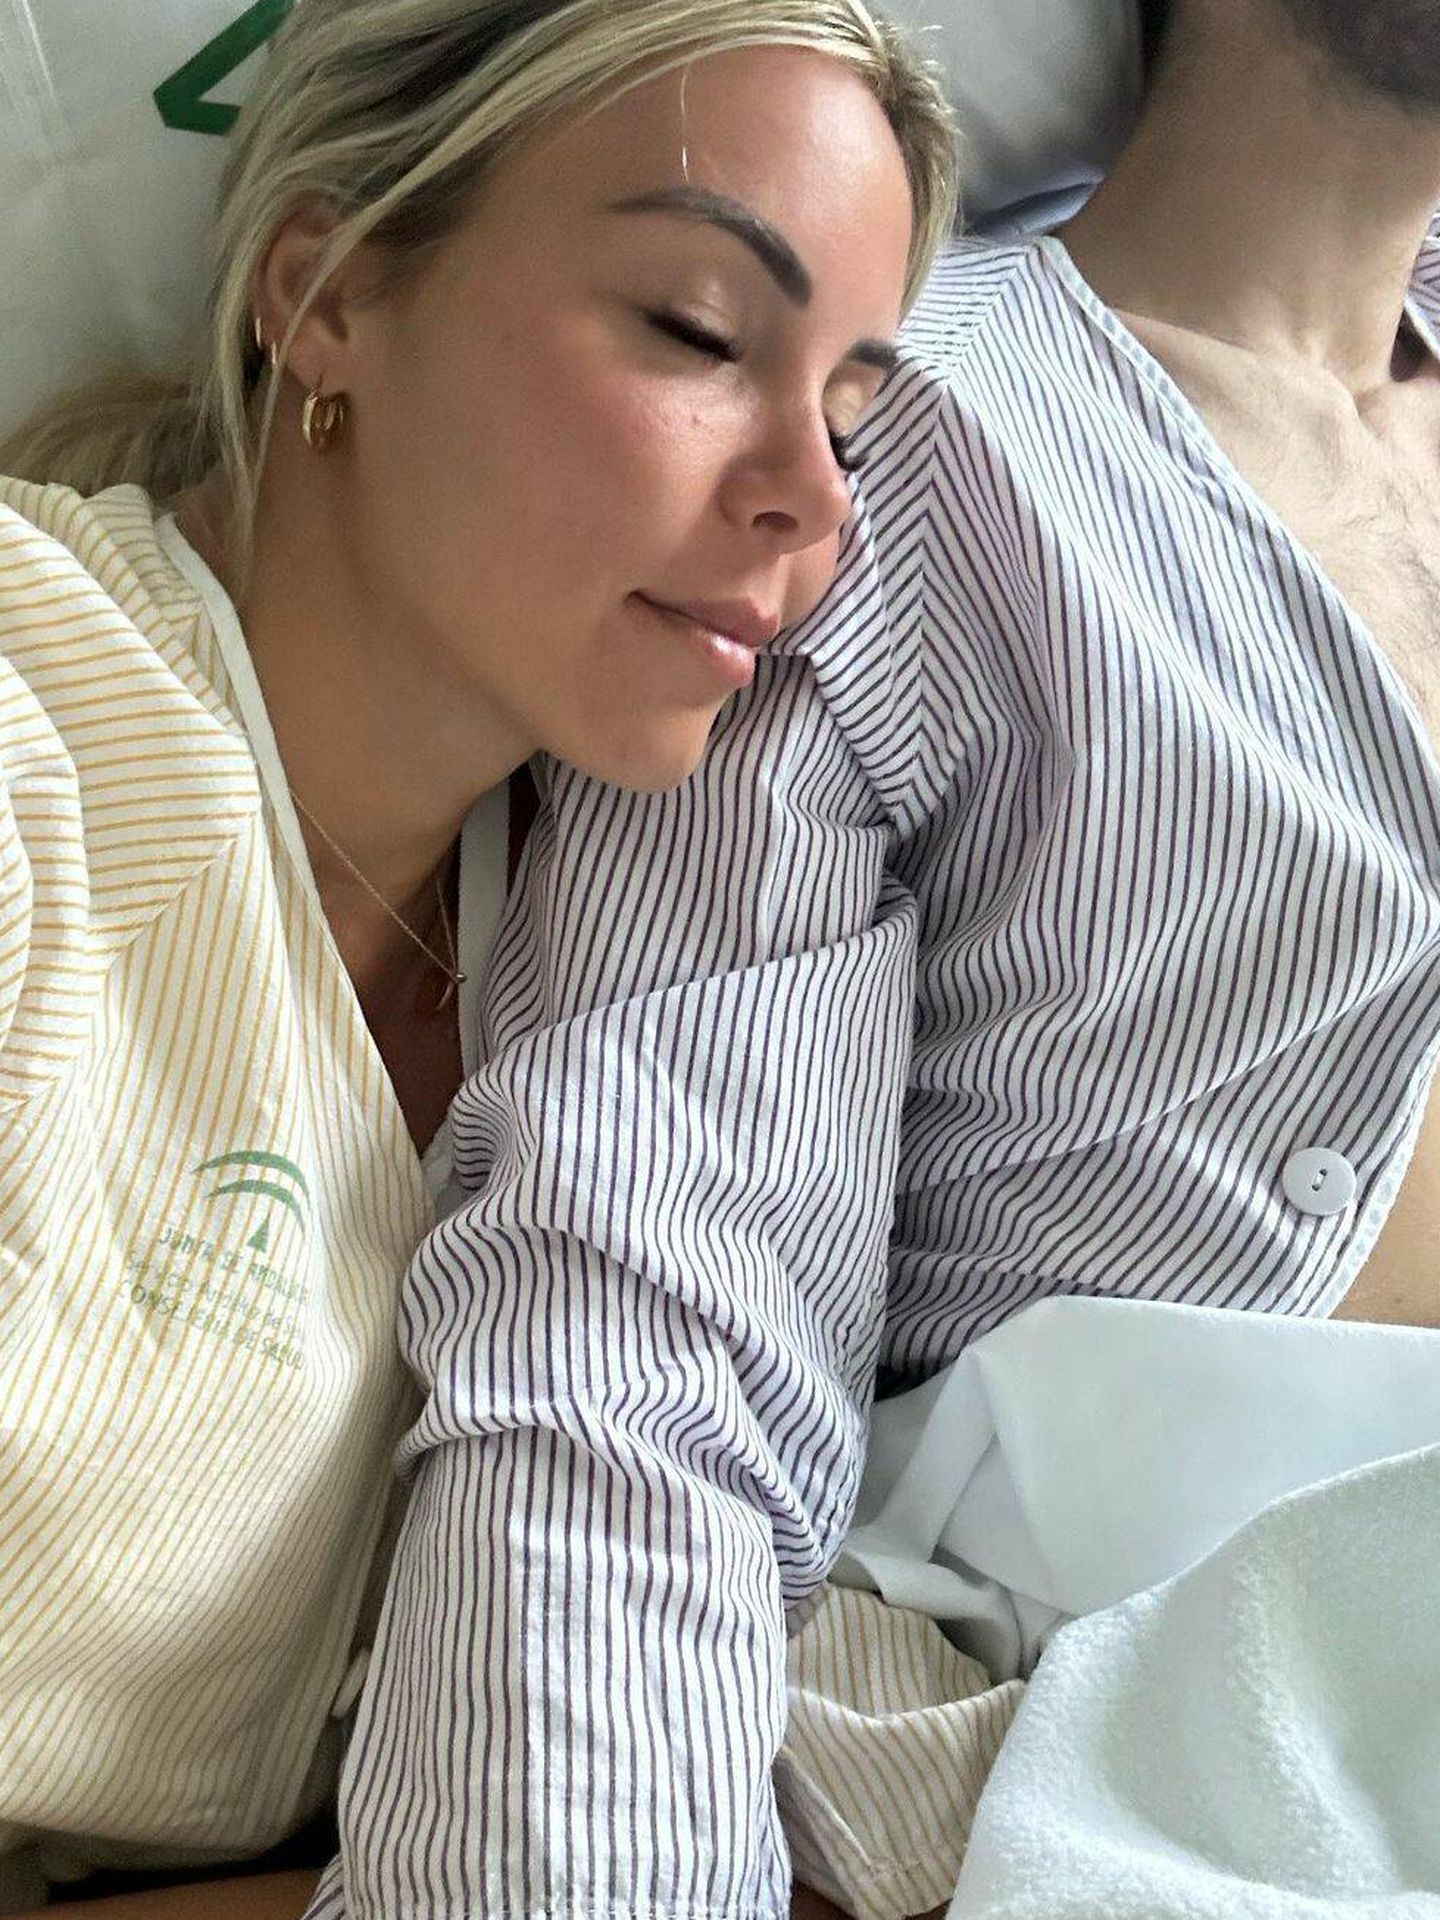 Alba Silva y Sergio Rico, en el hospital. (Instagram/@albasilvat)